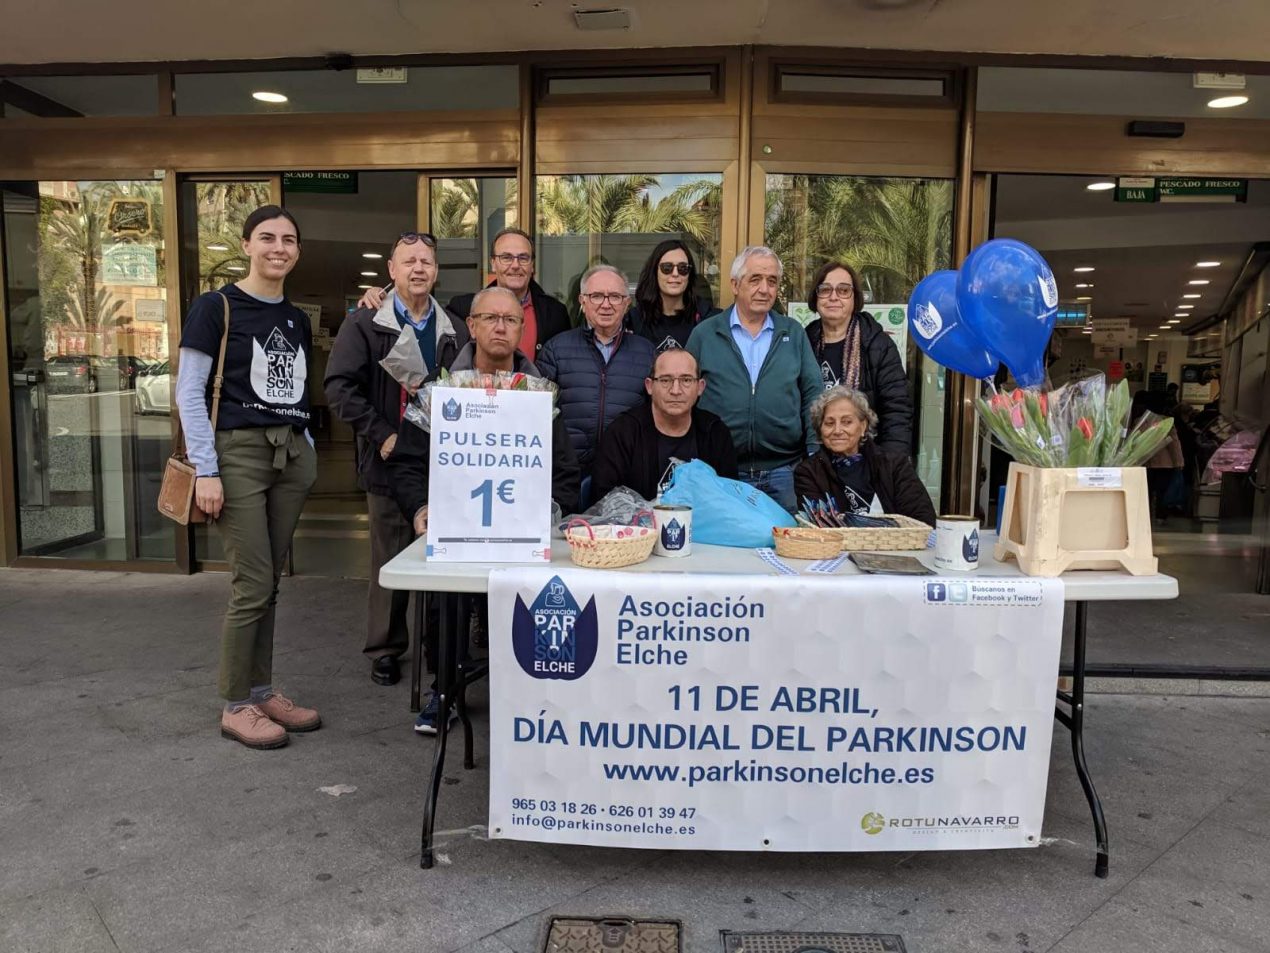 Día Mundial del Parkinson, 11 de abril de 2019 – Plaza de Madrid